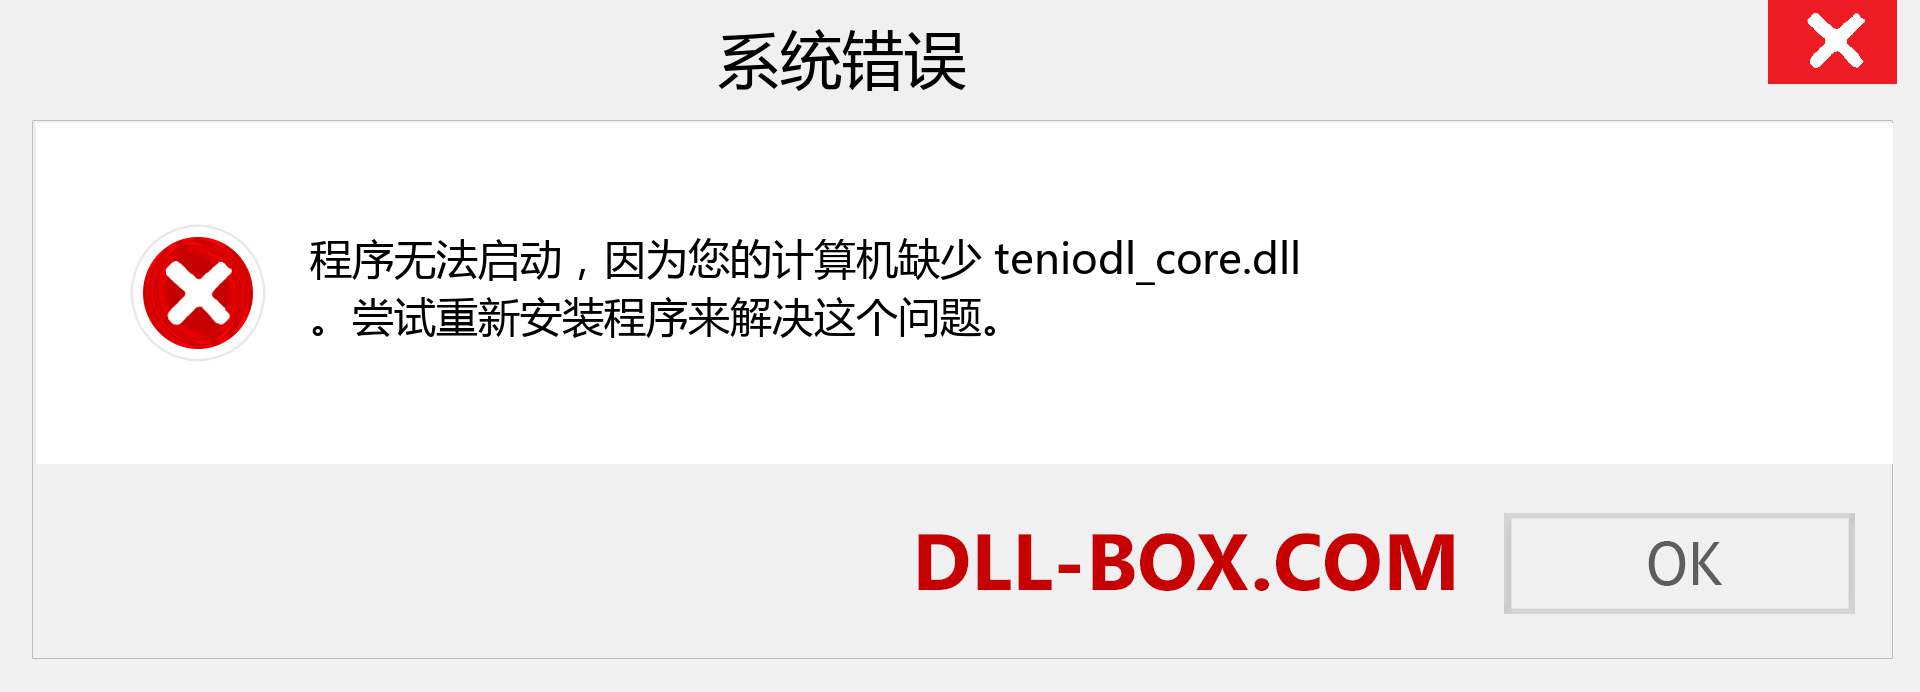 teniodl_core.dll 文件丢失？。 适用于 Windows 7、8、10 的下载 - 修复 Windows、照片、图像上的 teniodl_core dll 丢失错误